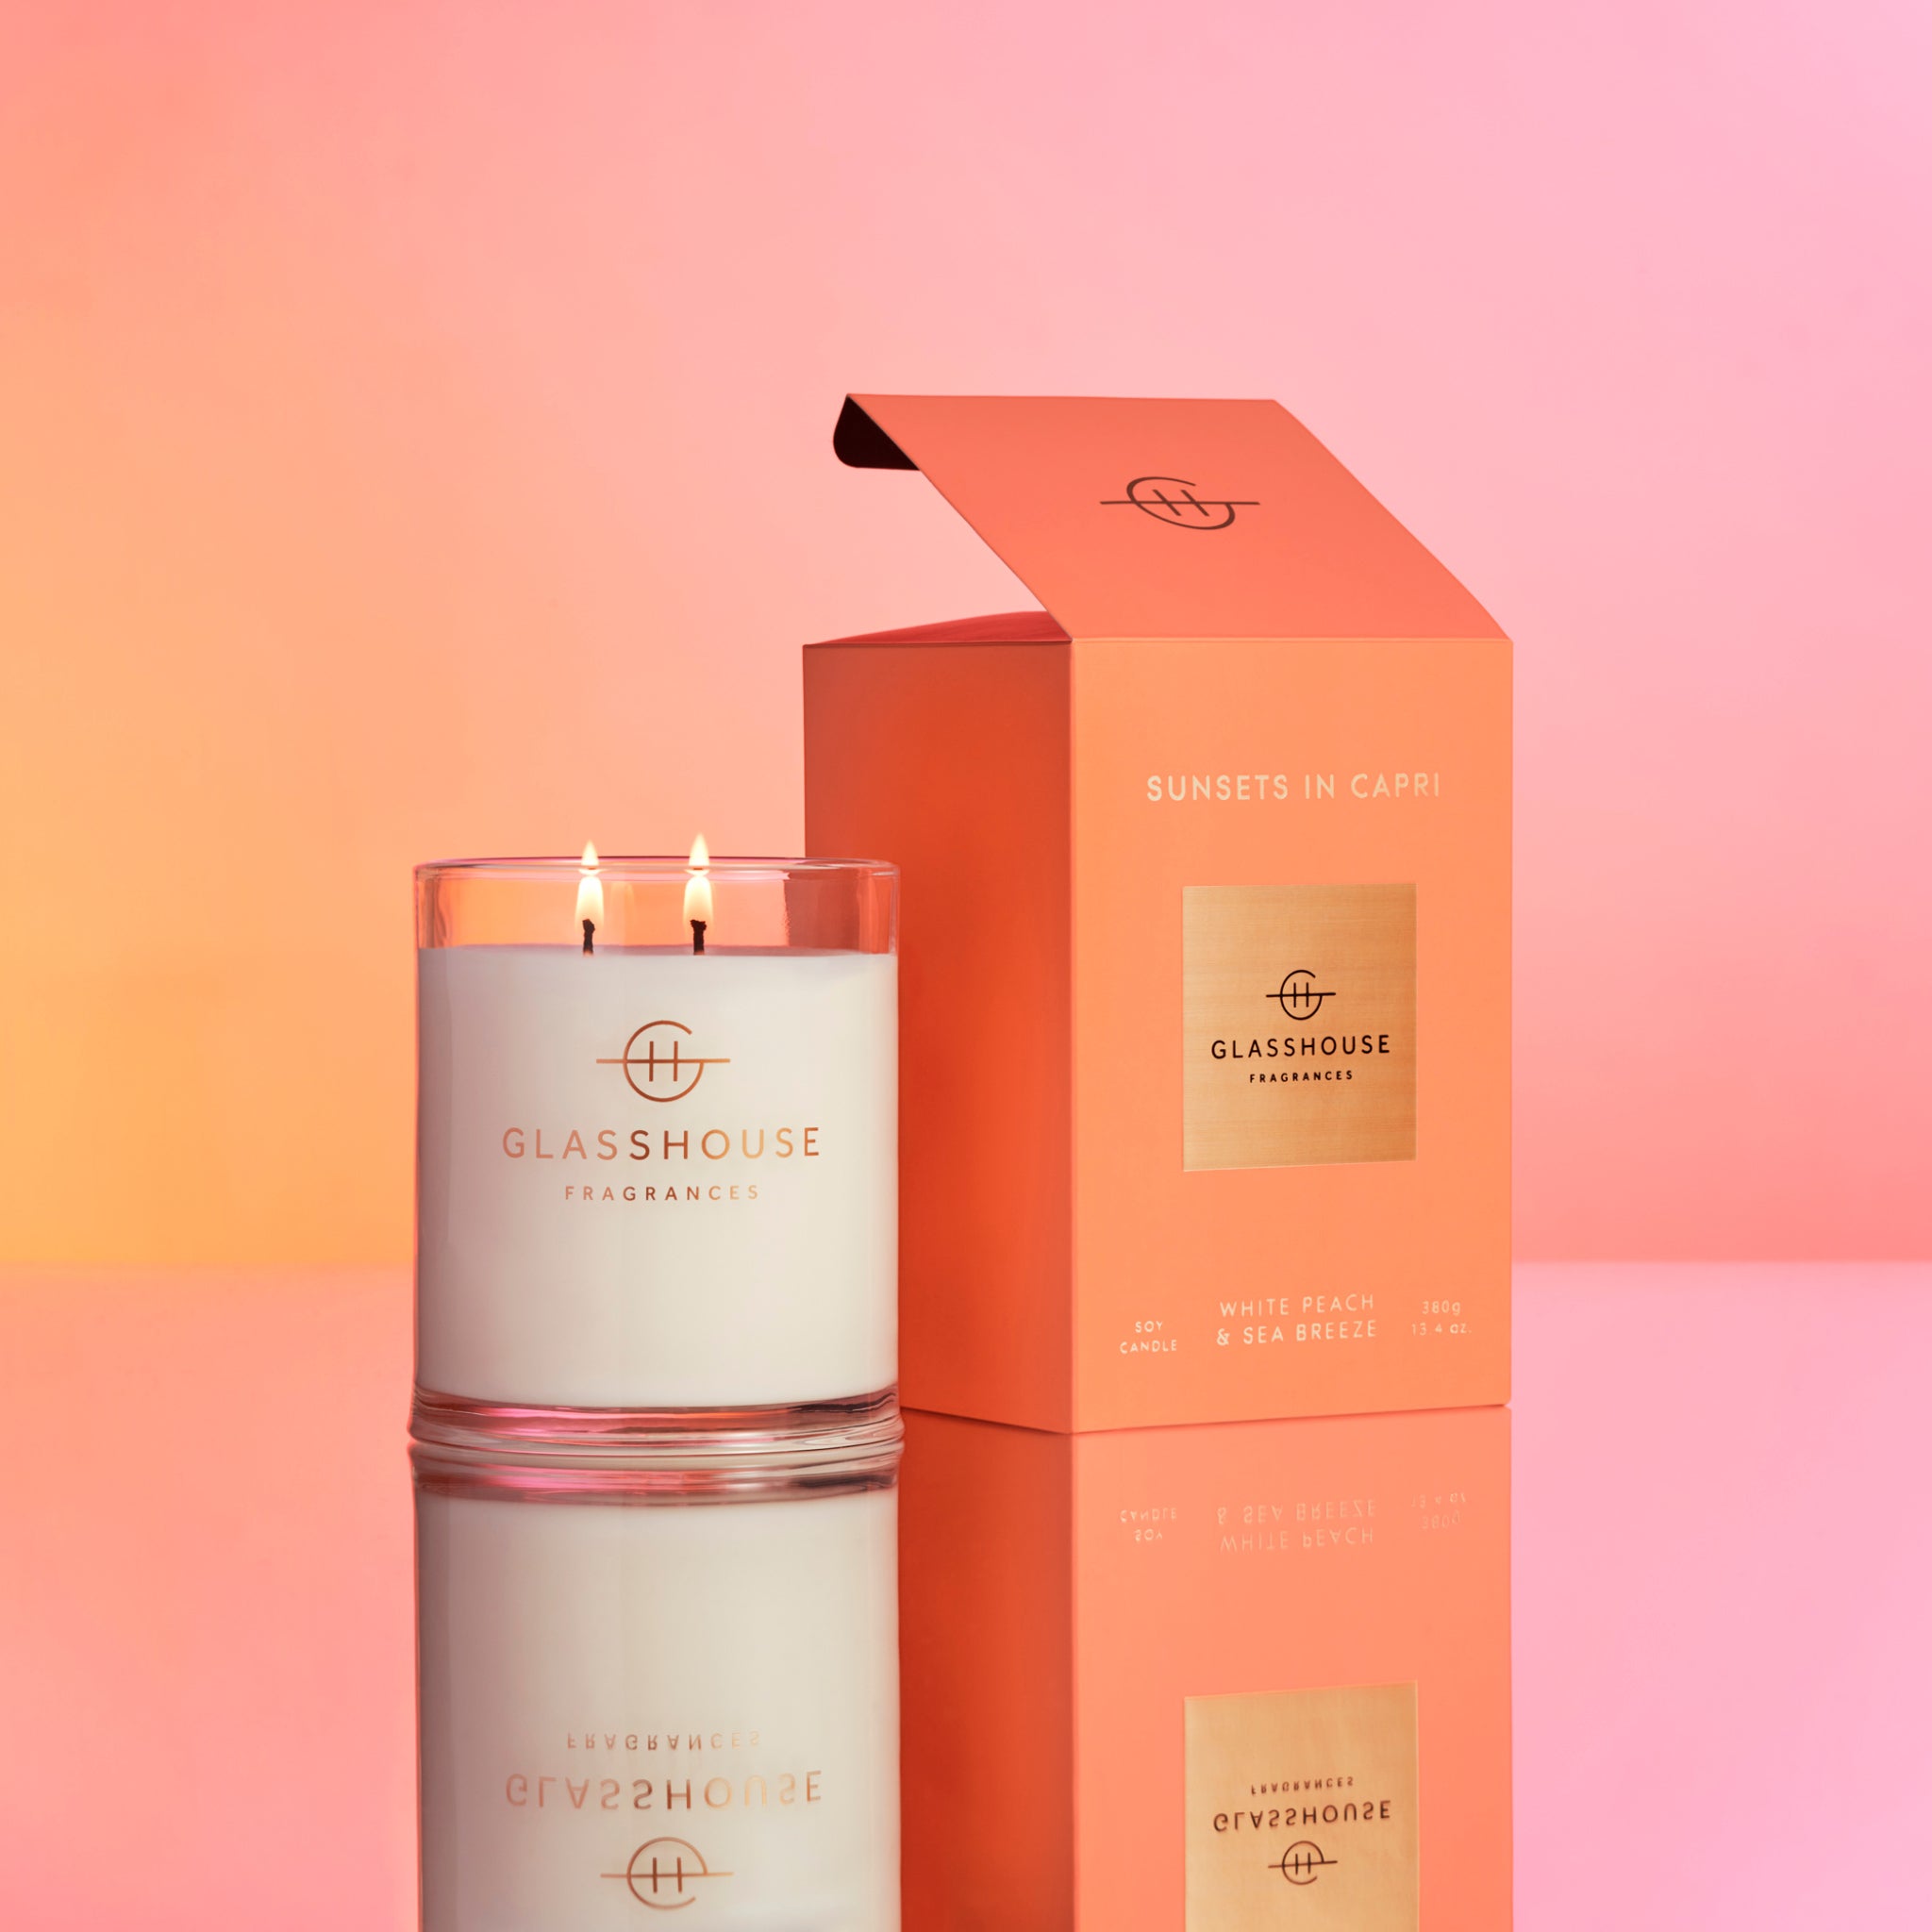 Burning Glasshouse Fragrances Sunsets In Capri Soy Candle on sunset orange-pink background